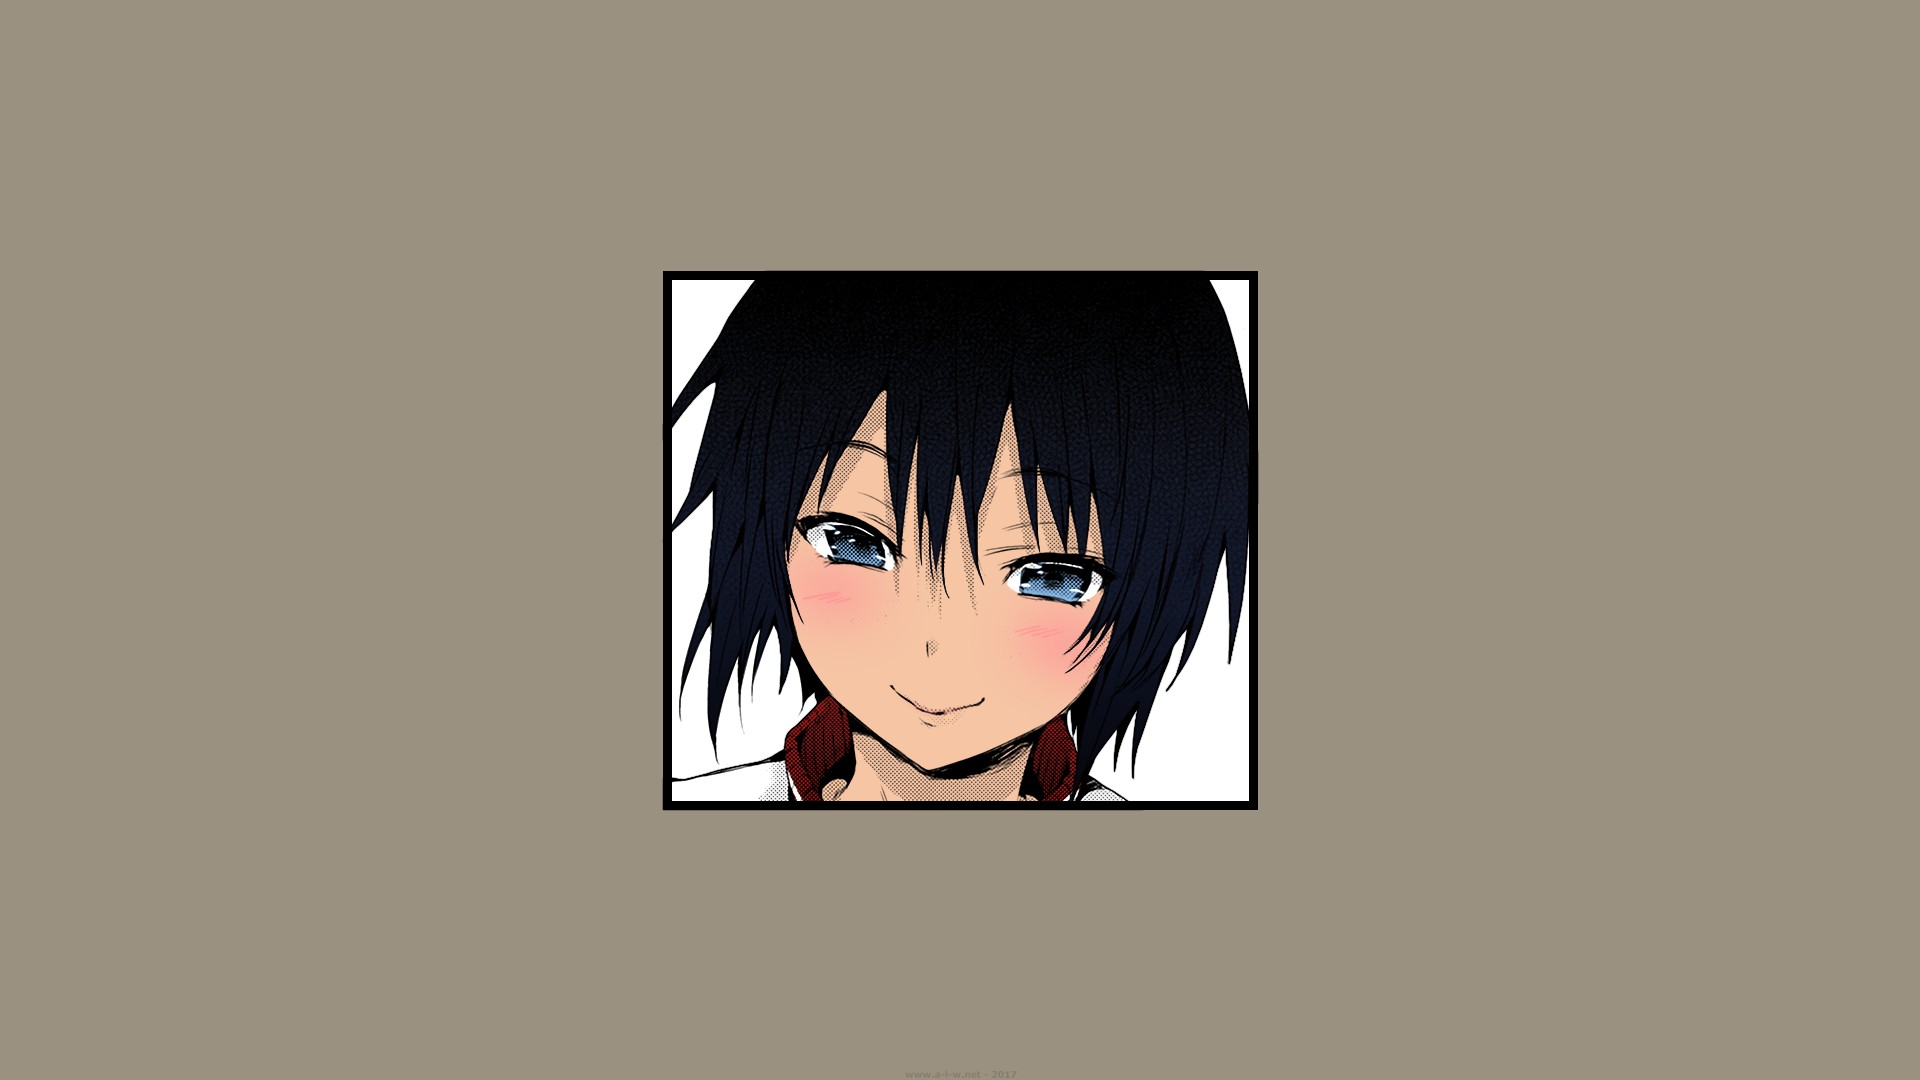 Anime Girl Blushing And Smiling